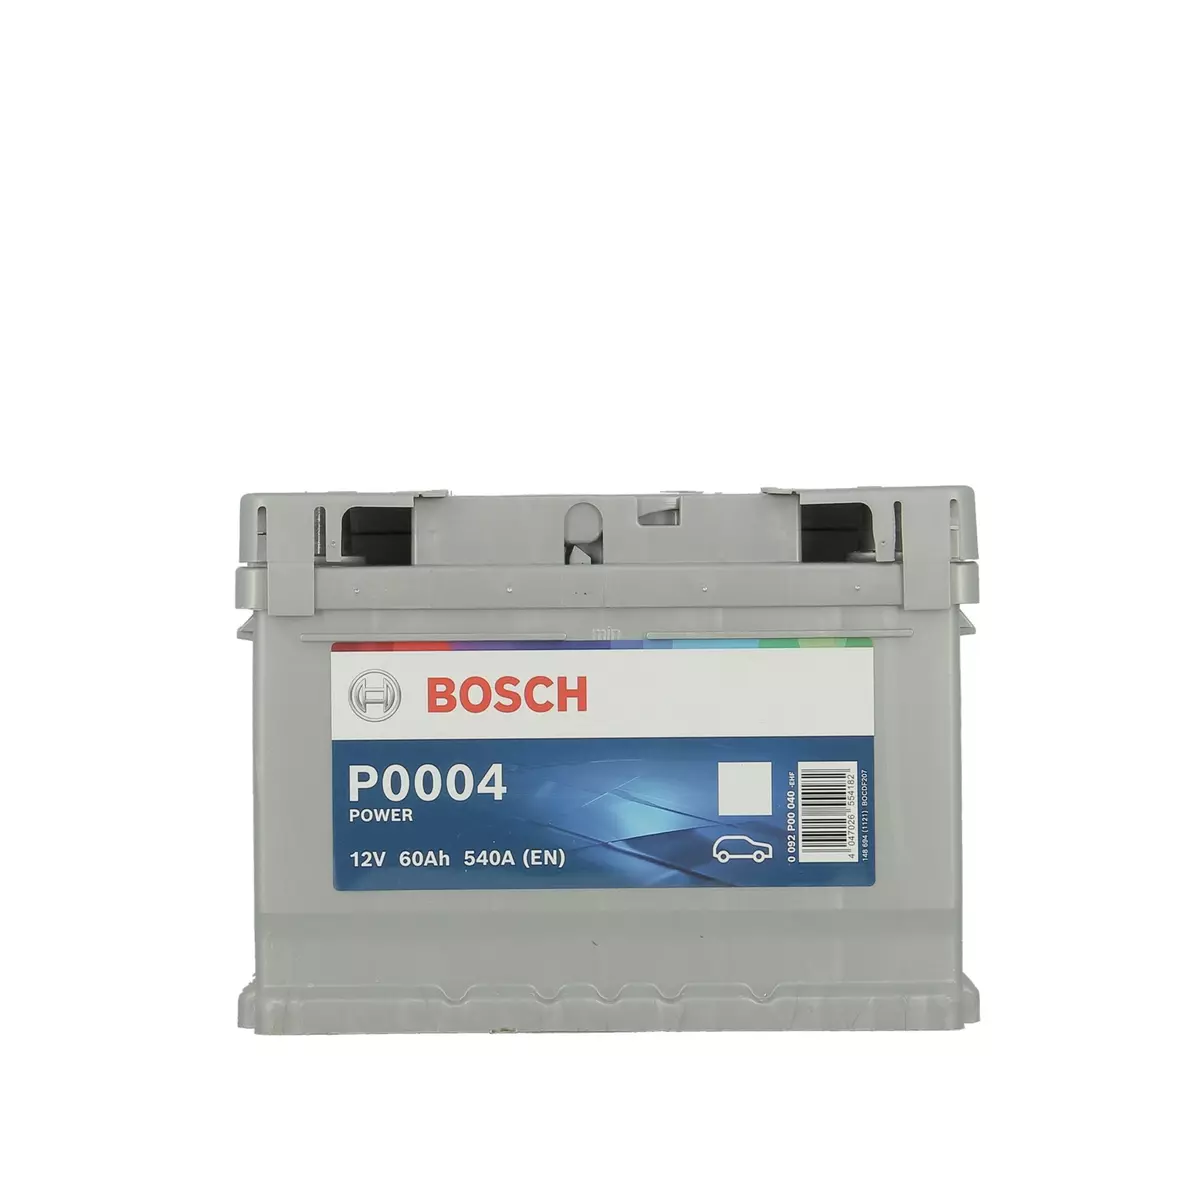 BOSCH Batterie 60Ah 540A P0004 pas cher 